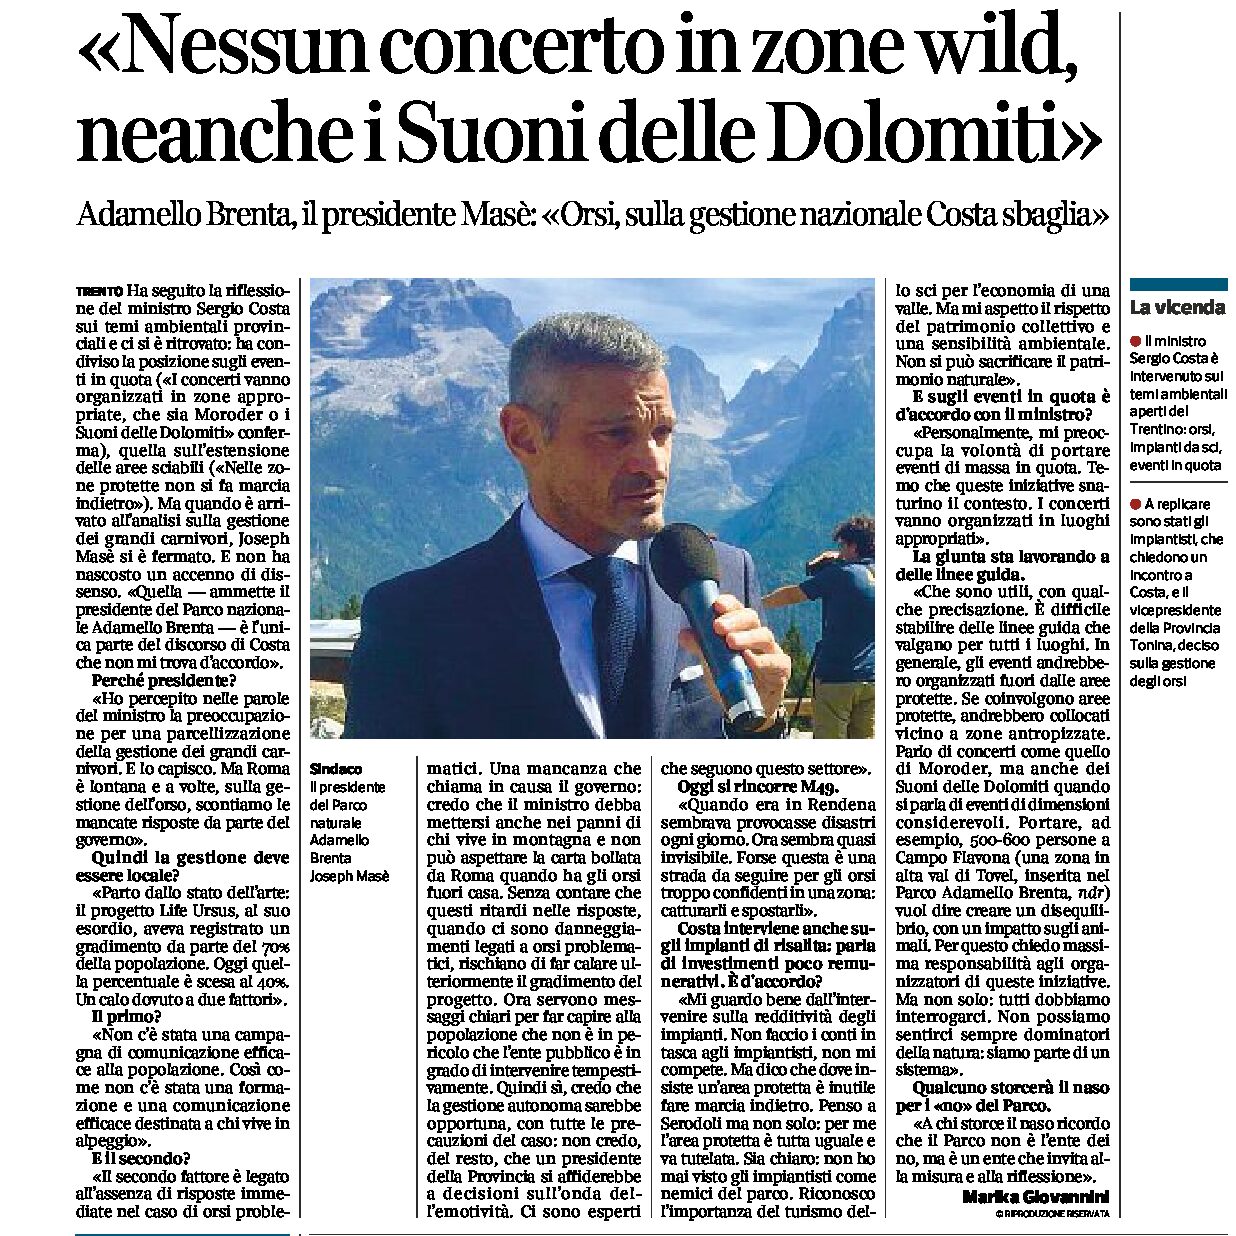 Parco Adamello Brenta: intervista al presidente Masè “nessun concerto in zone wild”